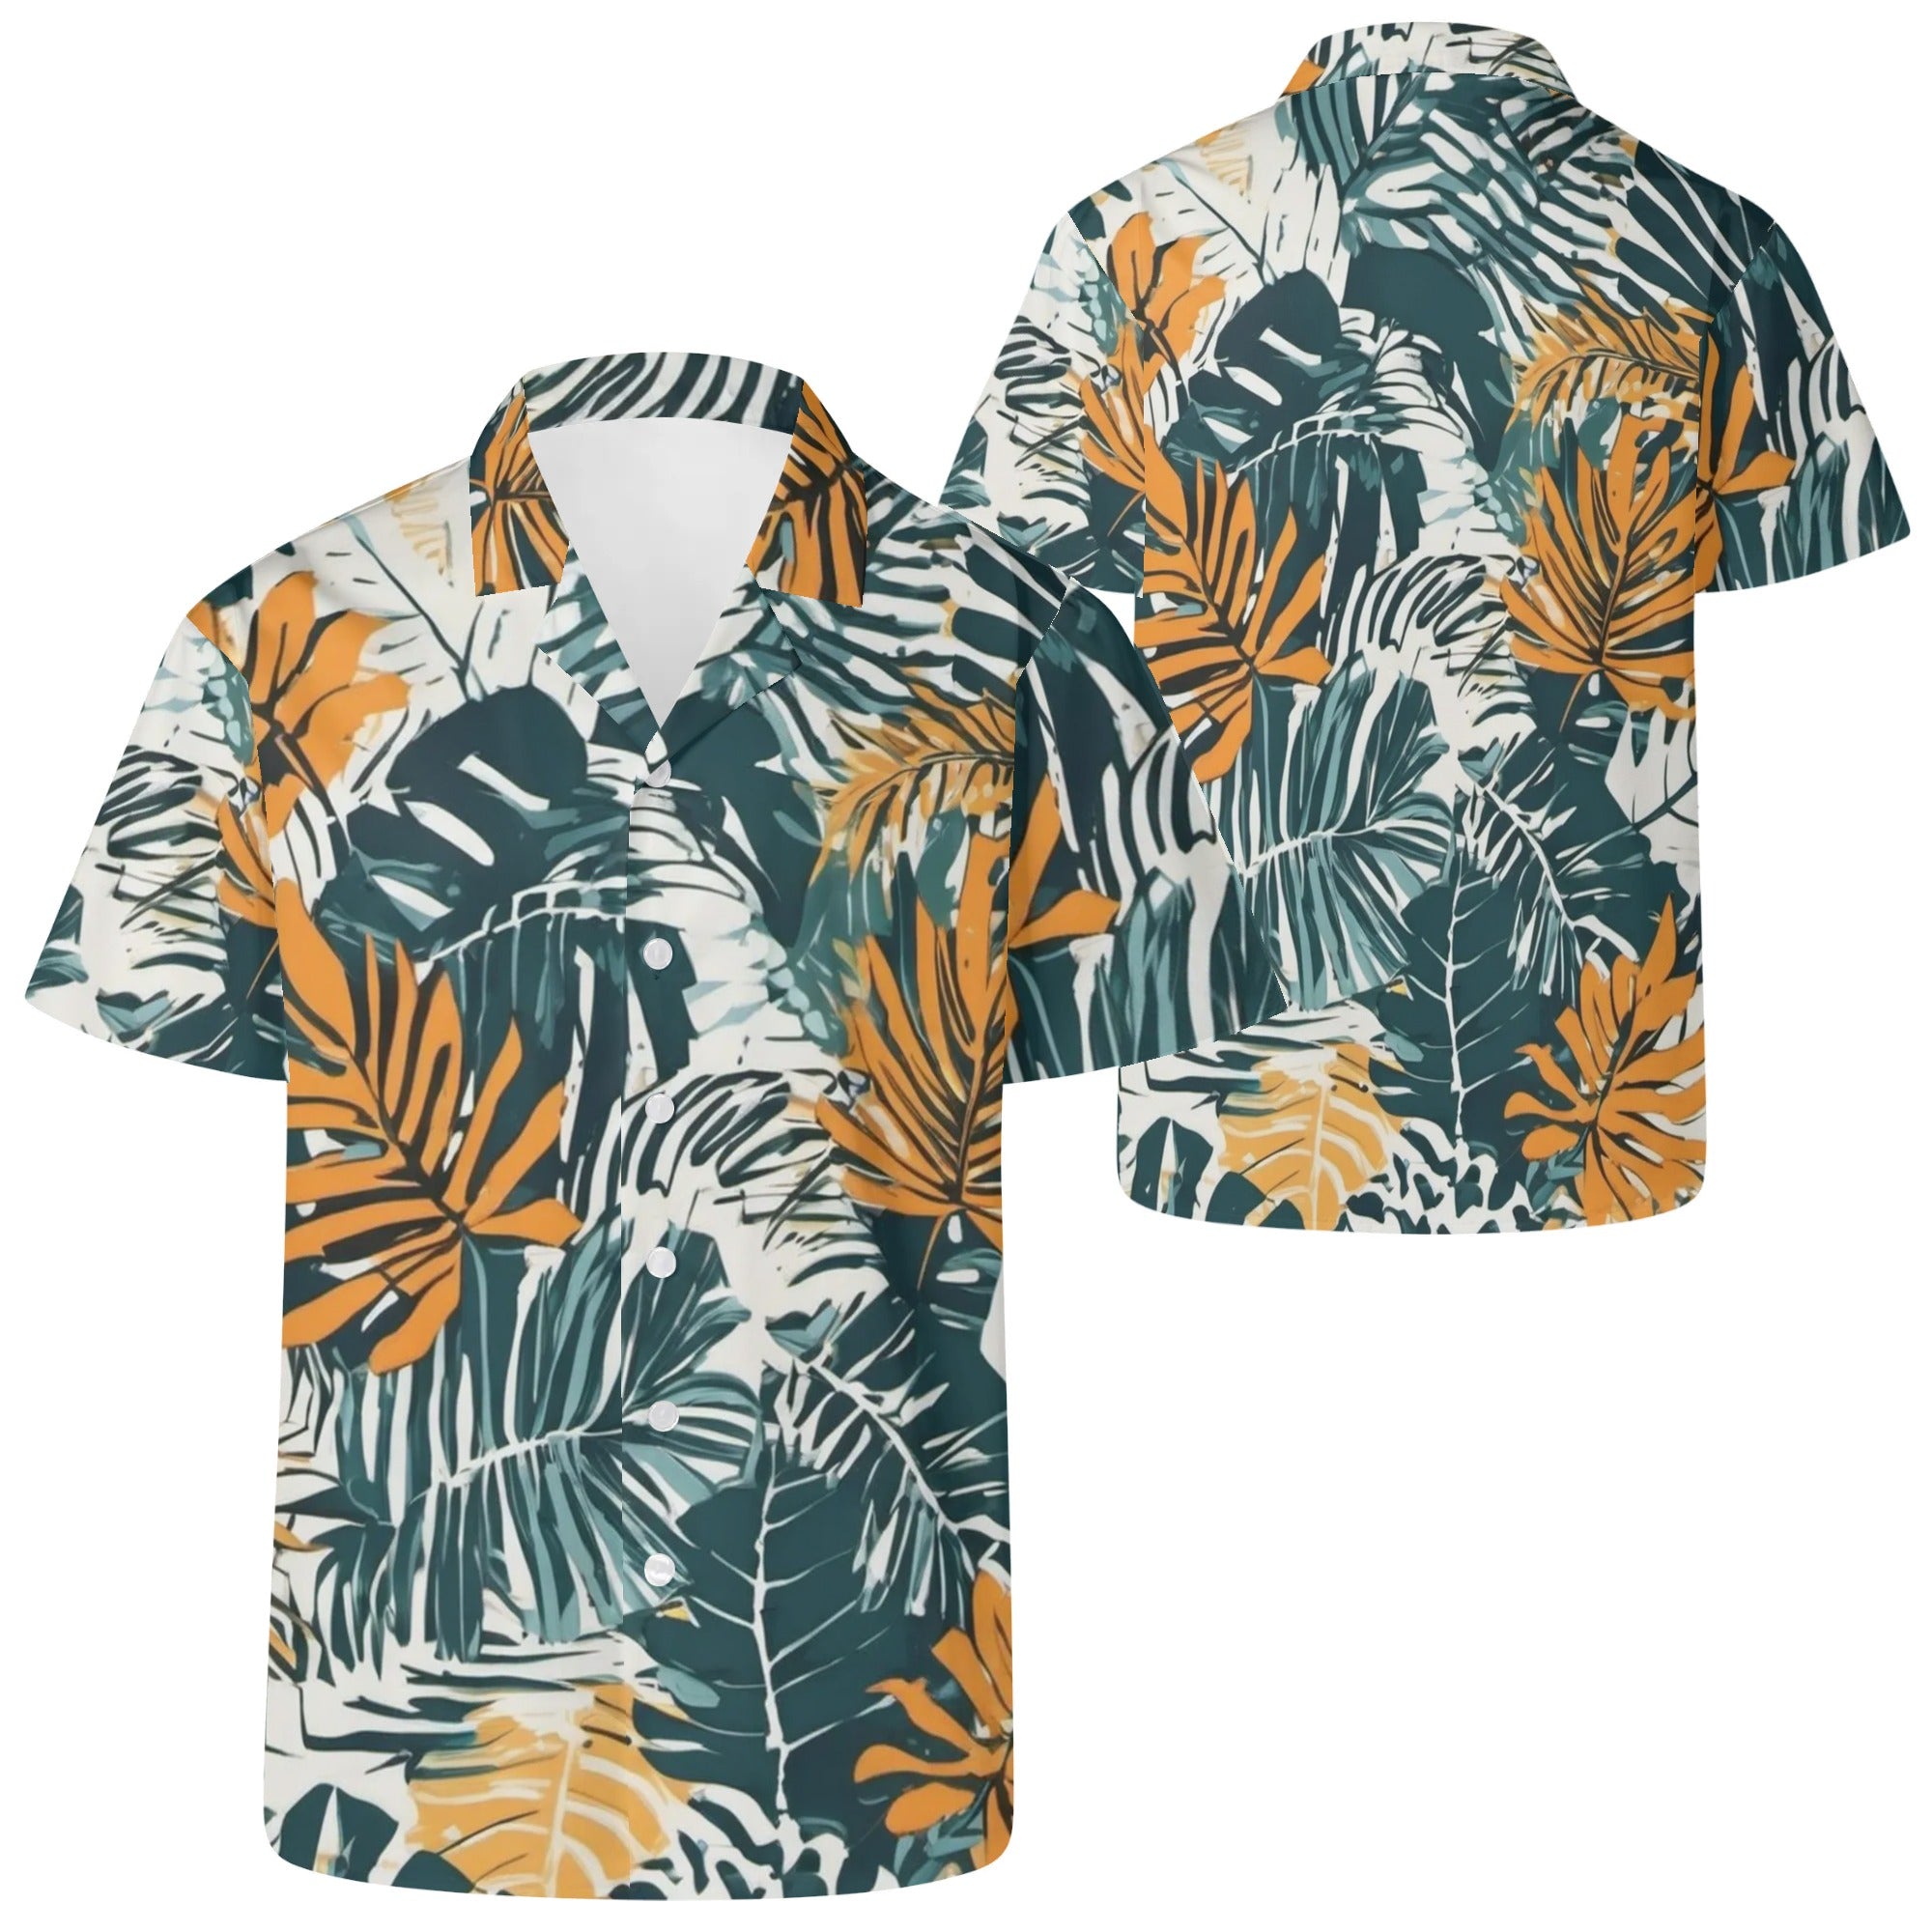 6XL - Jungle Voyage Mens Casual Hawaiian Shirt - mens hawaiian shirt at TFC&H Co.